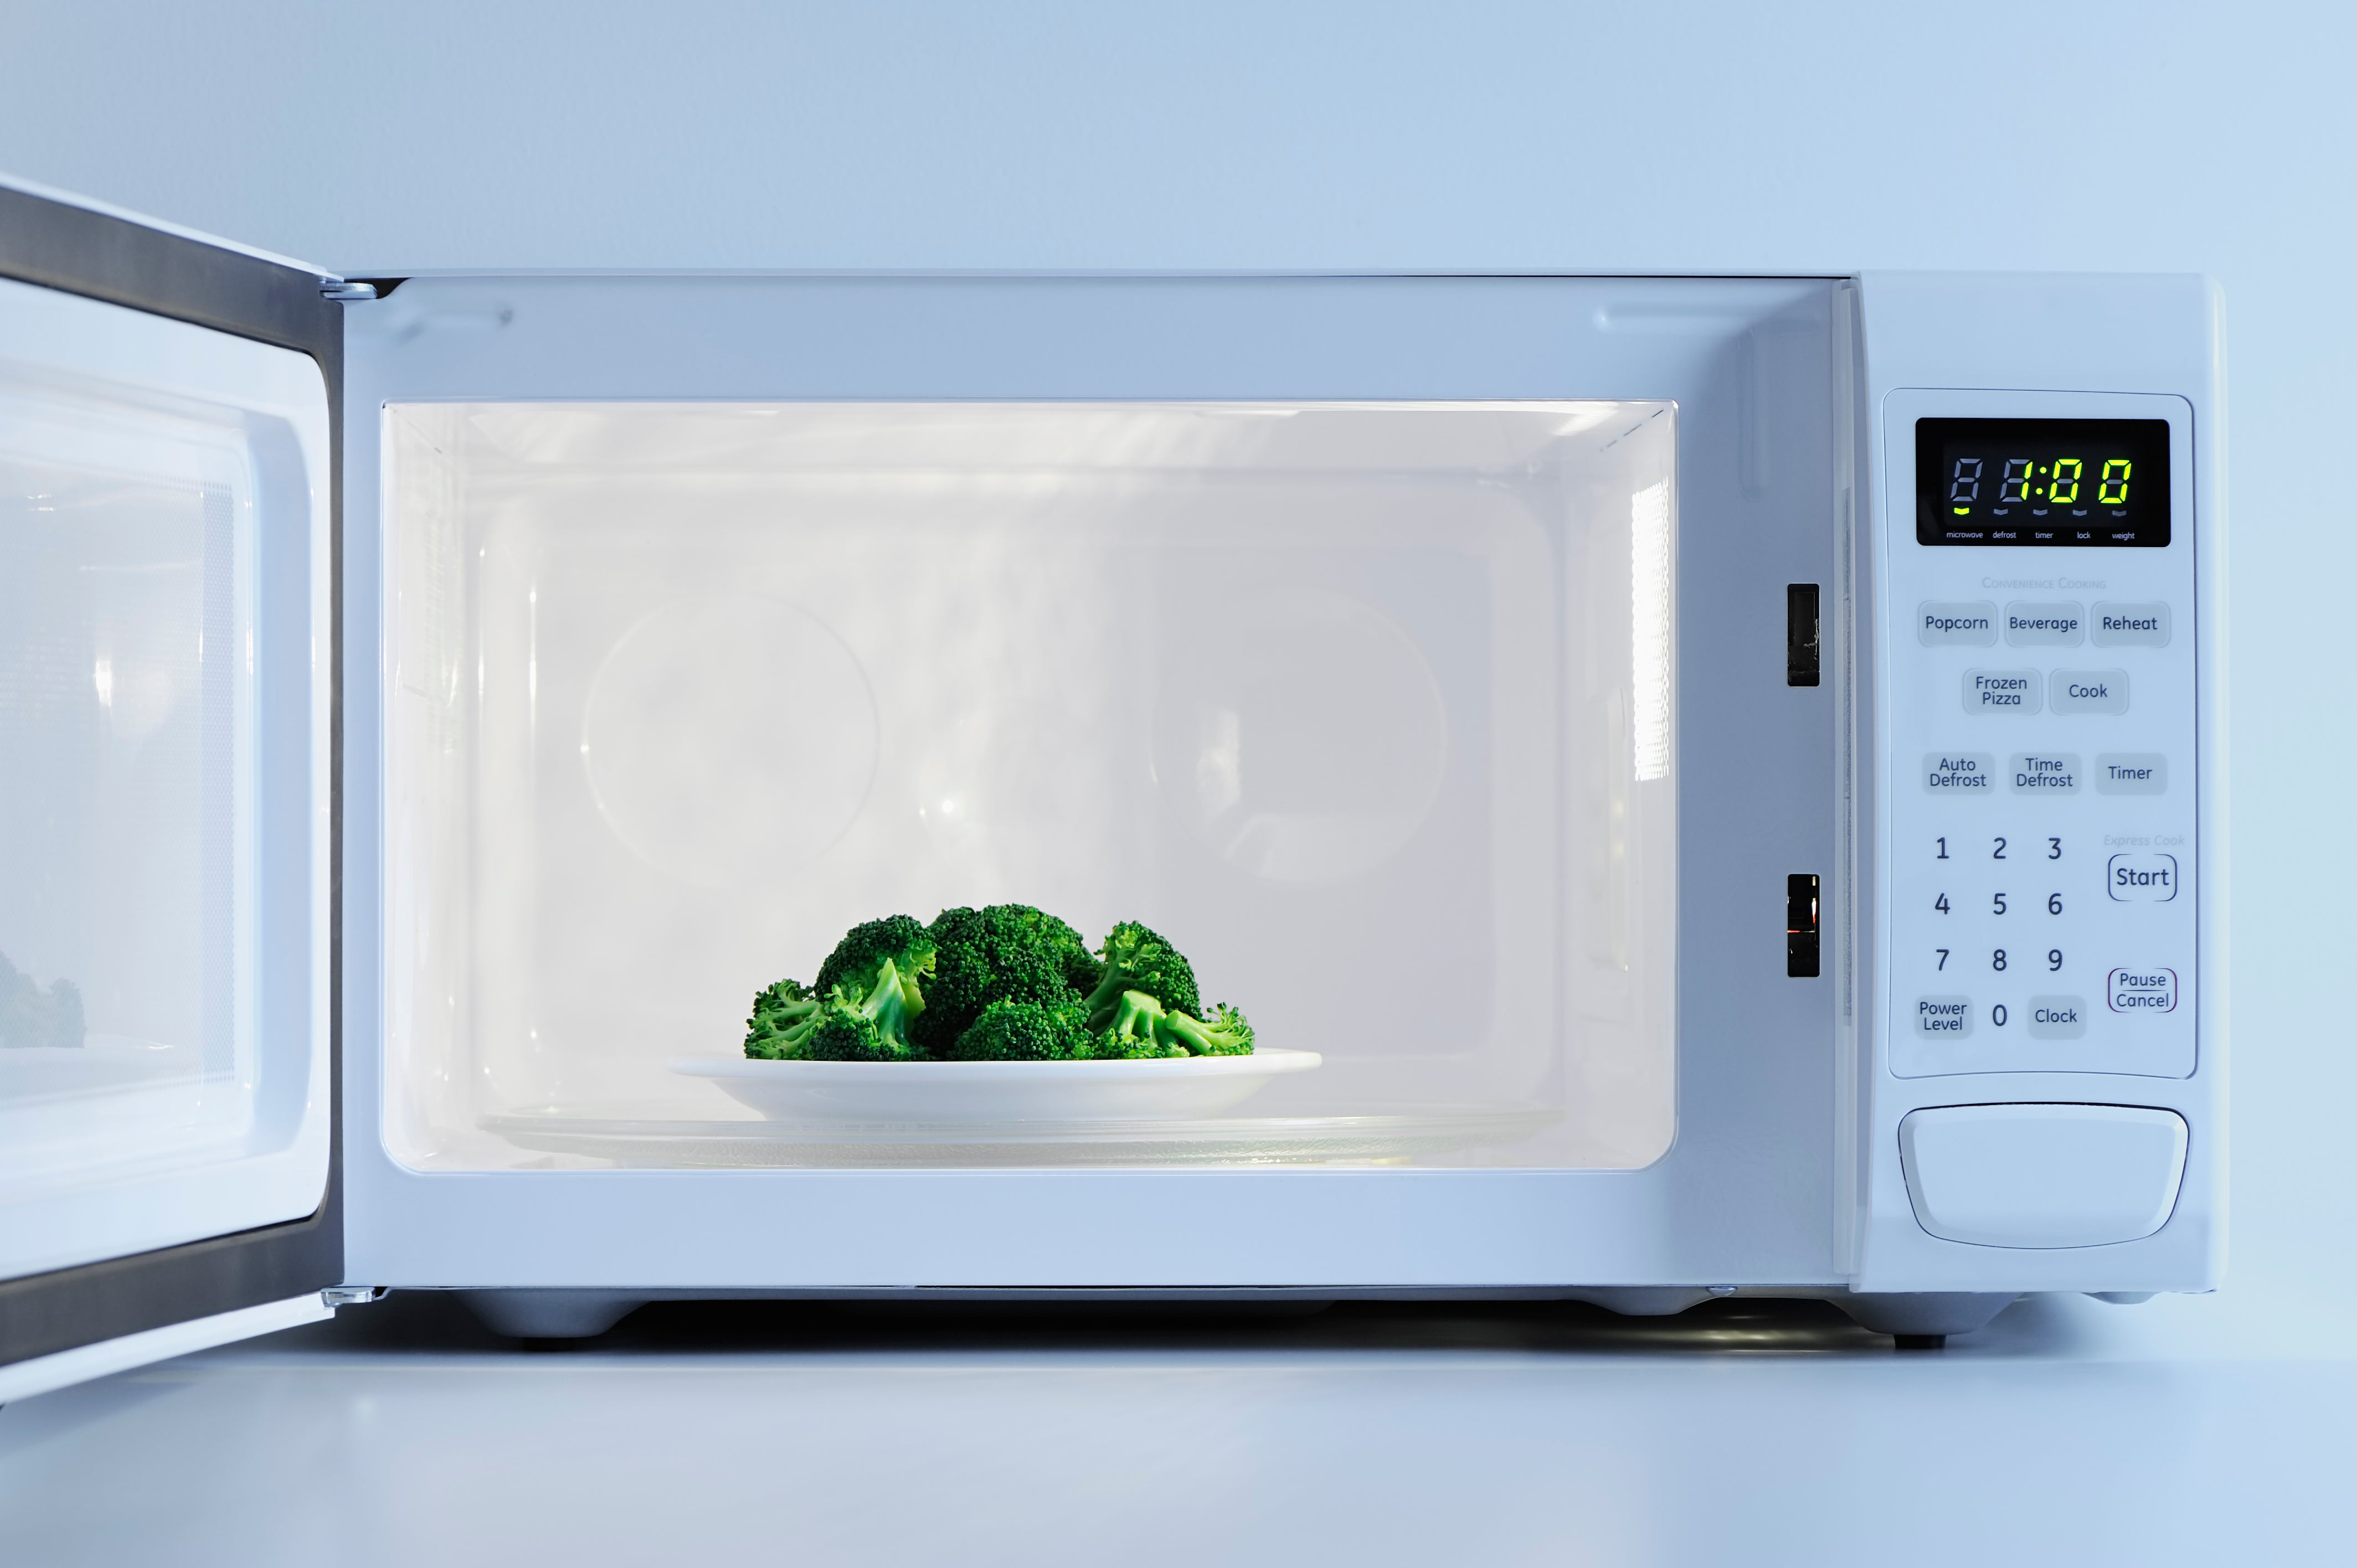 Замена свч. Микроволновая печь. Чистая микроволновка. Микроволновая печь с едой. Красивая микроволновая печь.